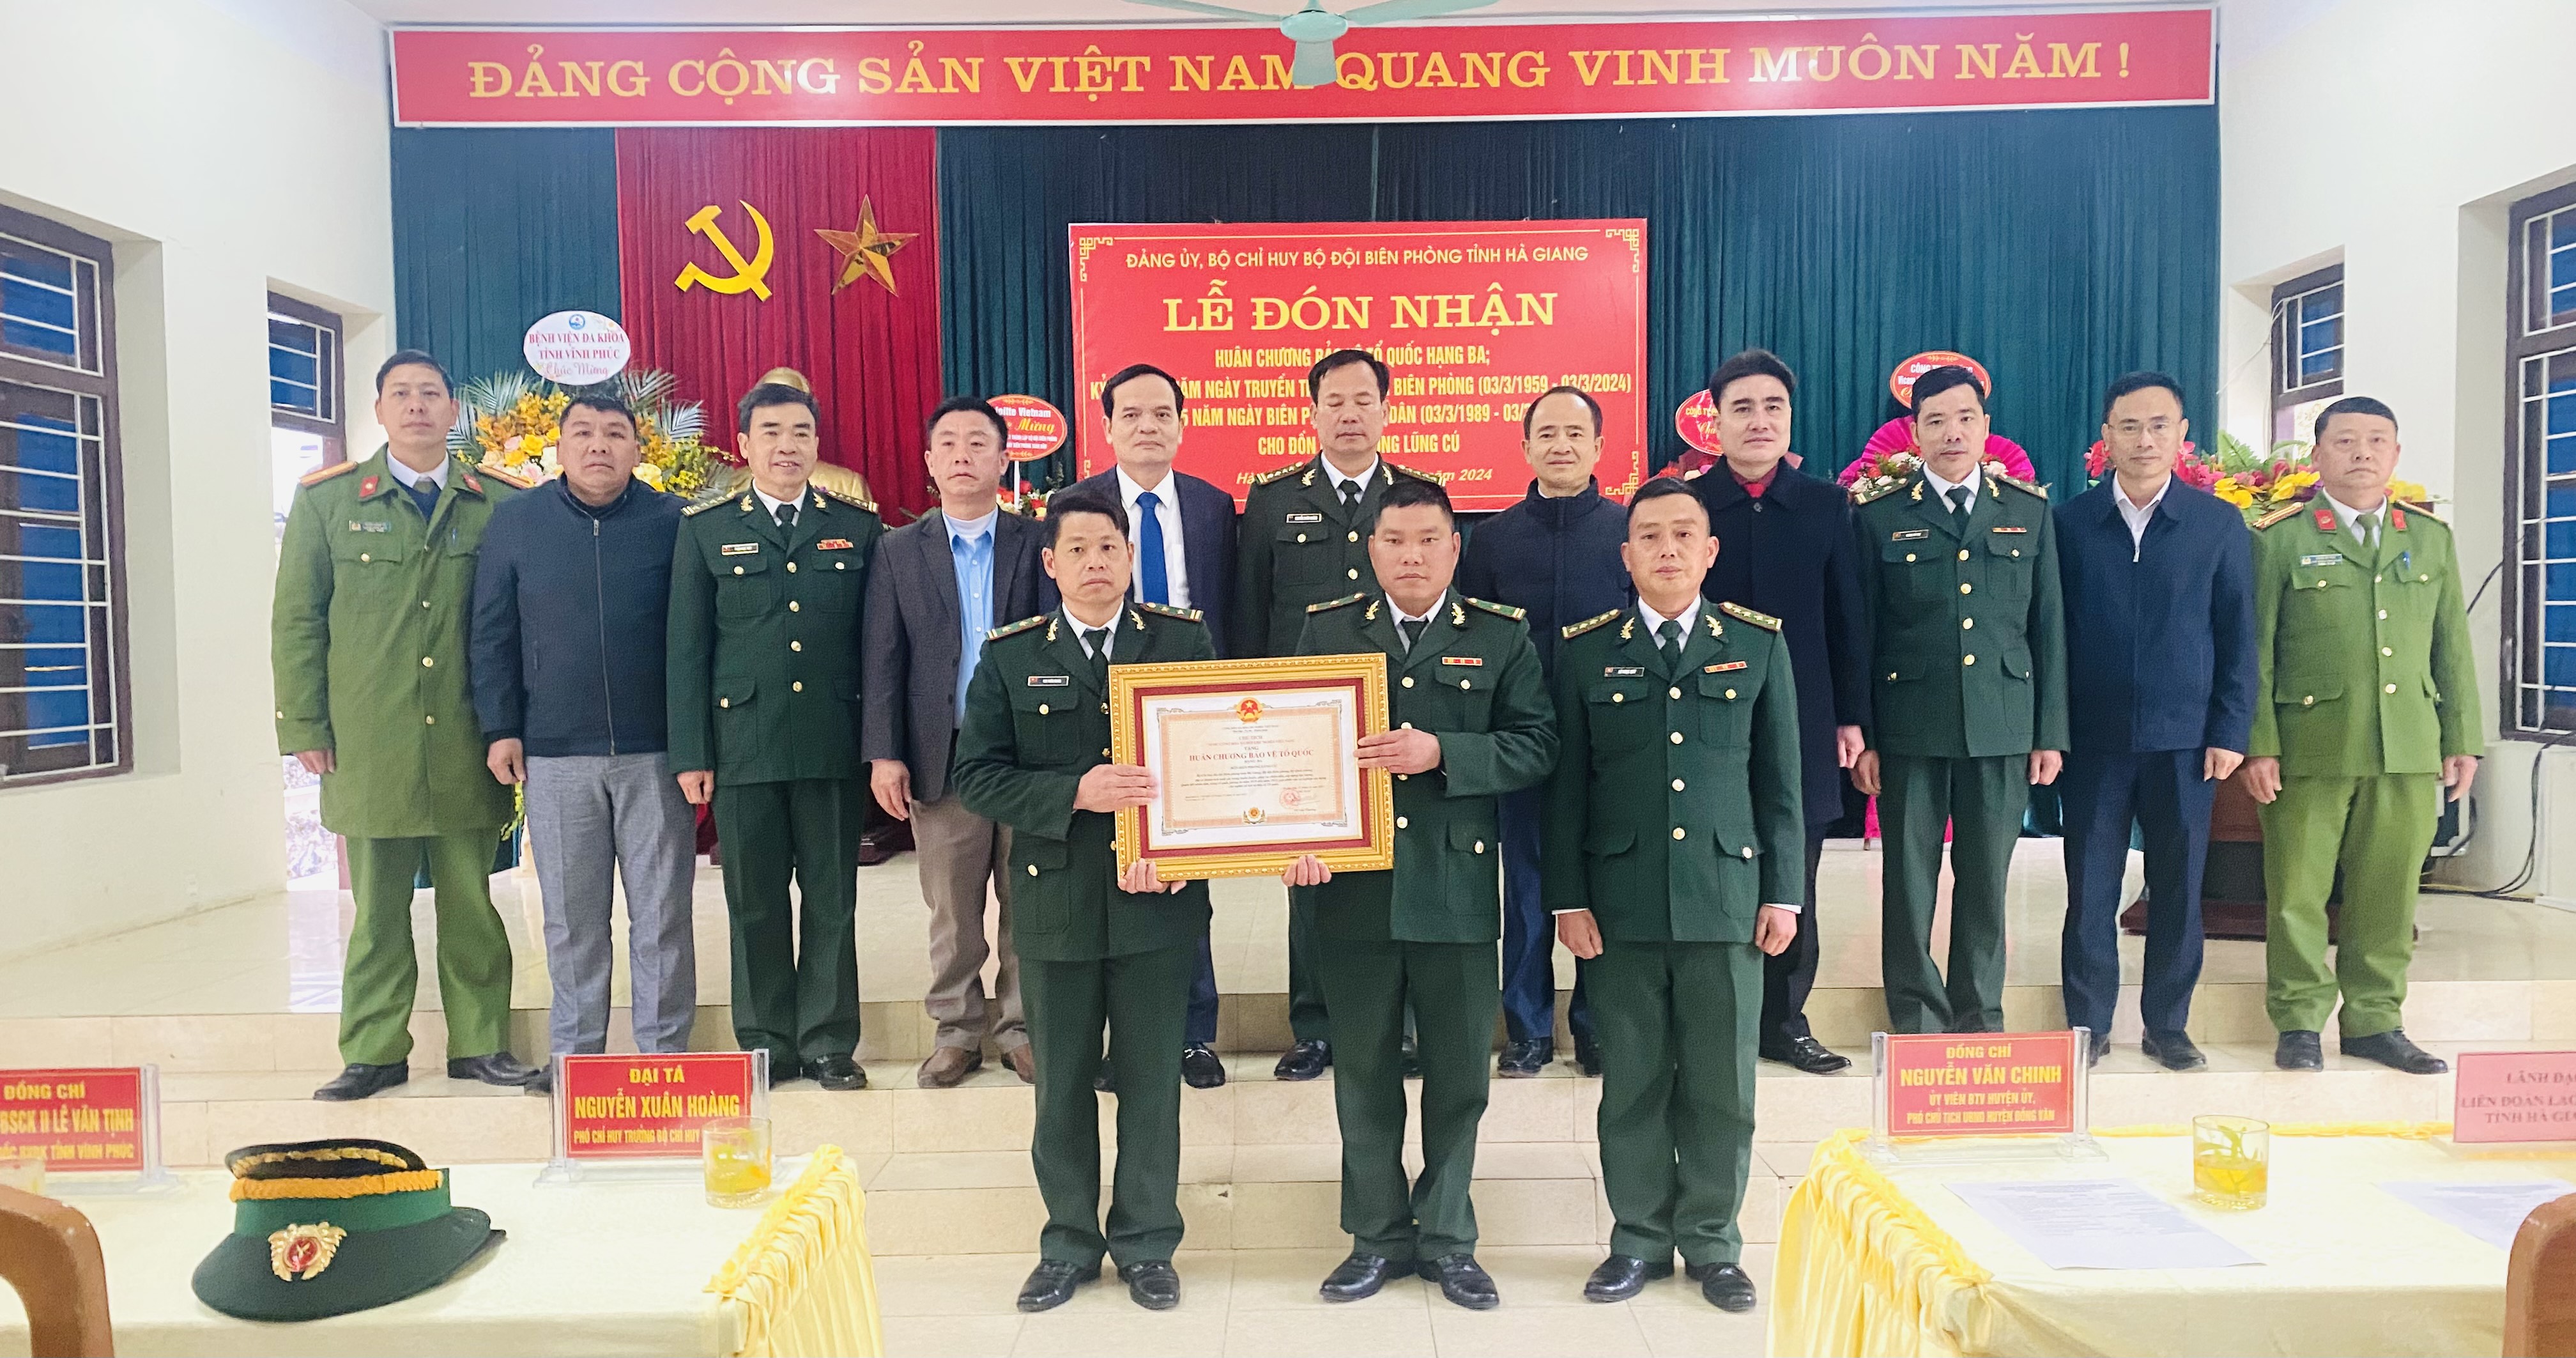 Lễ đón nhận huân chương bảo vệ tổ quốc và kỉ niệm ngày truyền thống Bộ đội biên phòng